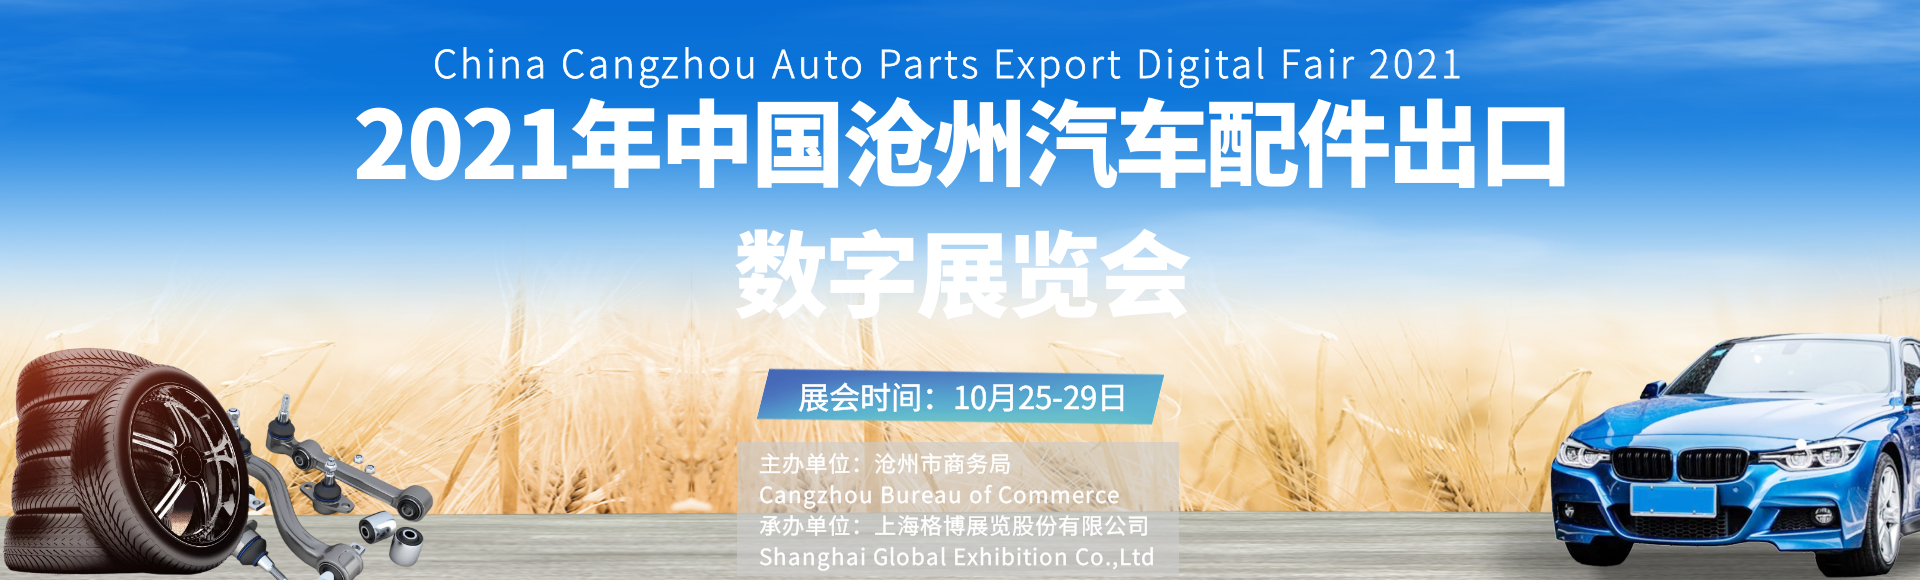 2021年中国沧州汽车配件<font color=#ff0000>出口</font>数字展览会即将启幕